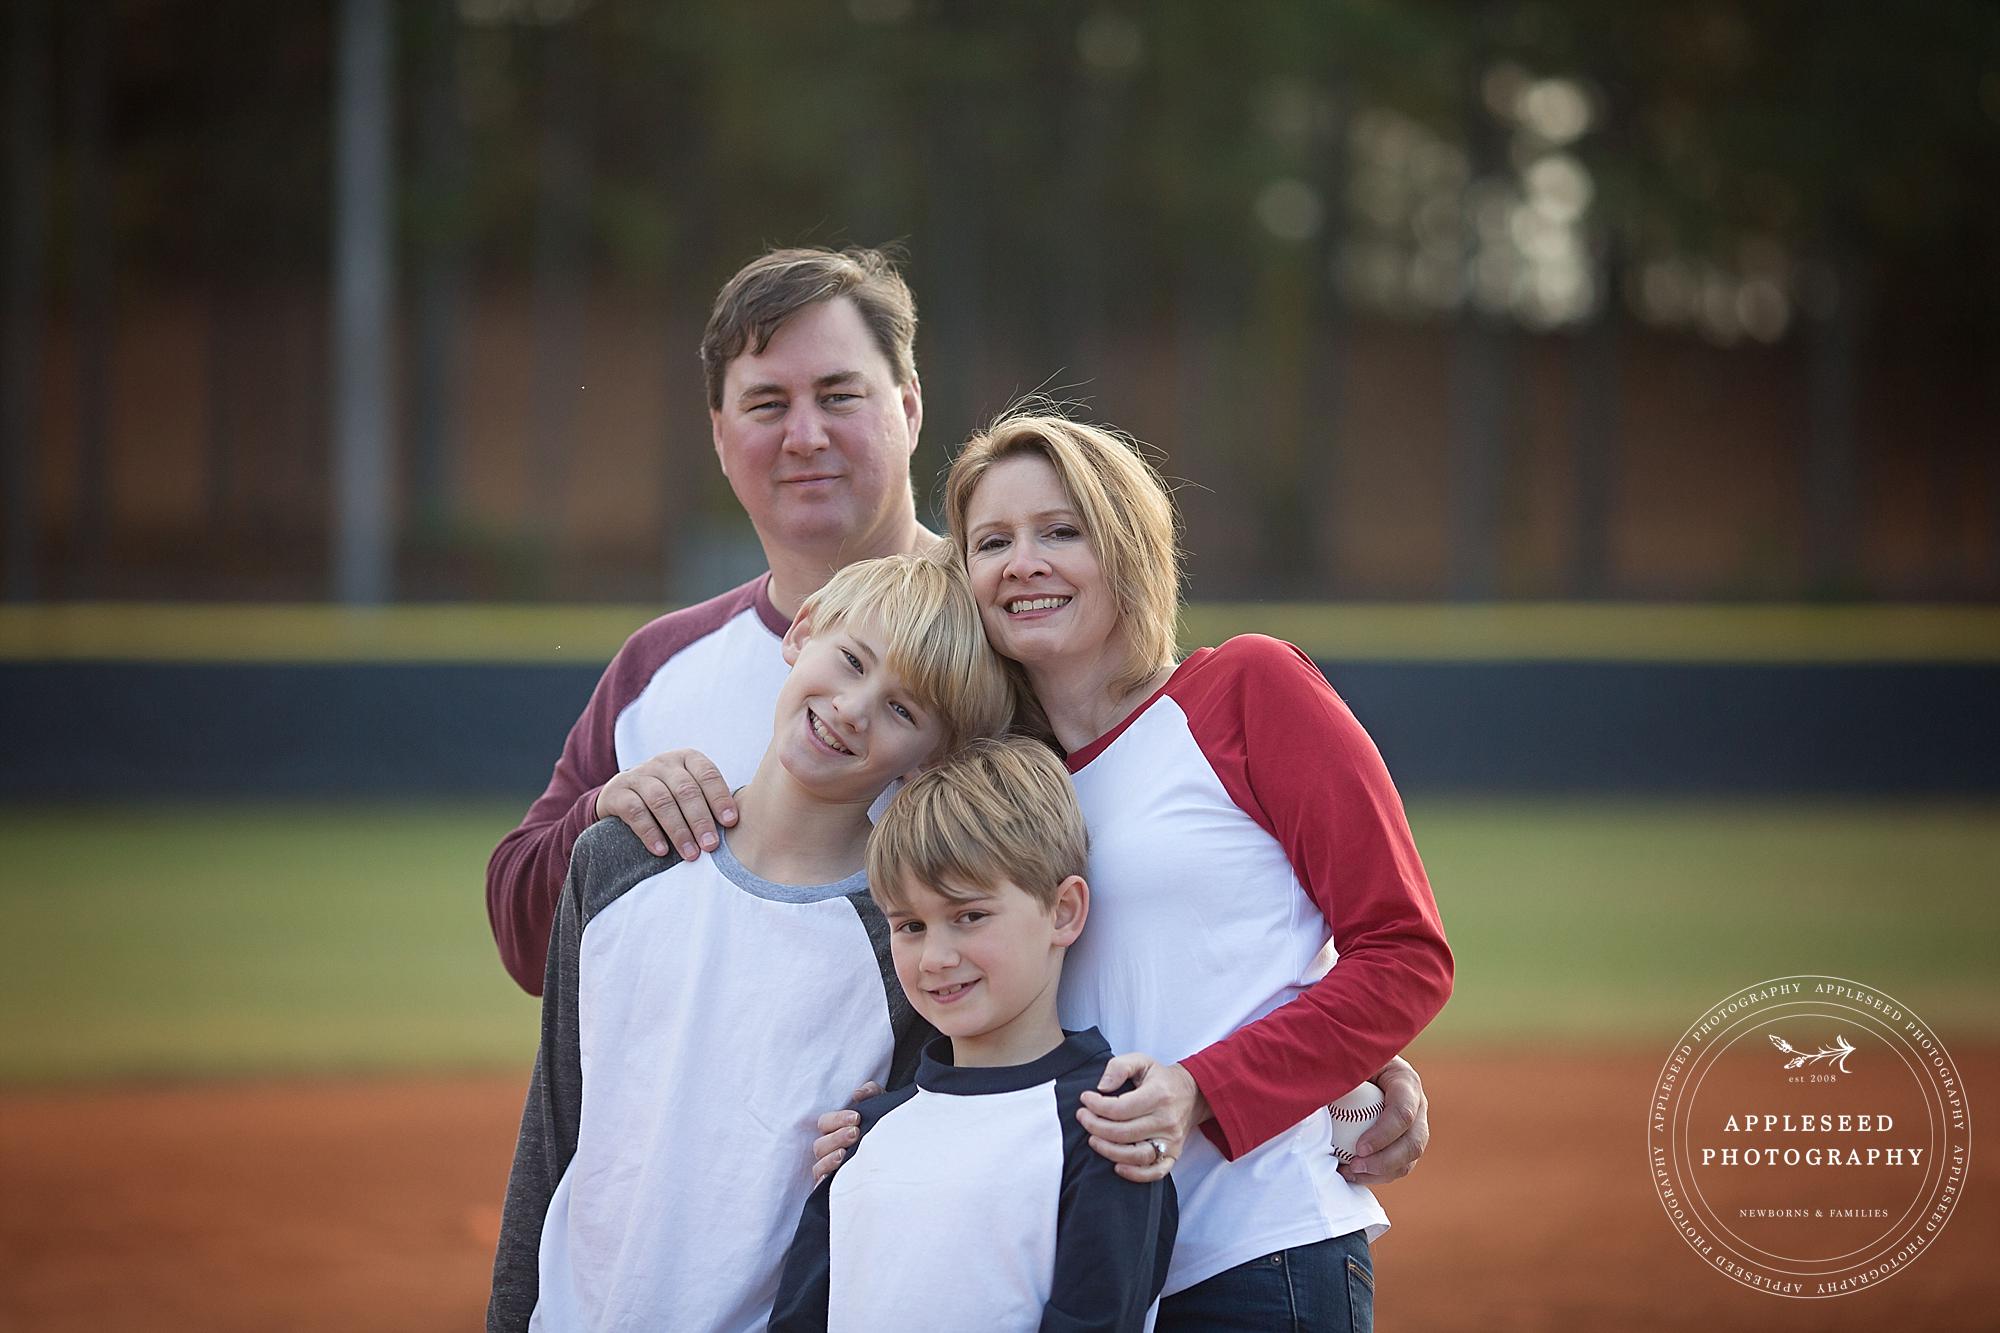 Atlanta Family Photographer | Baseball Field Session